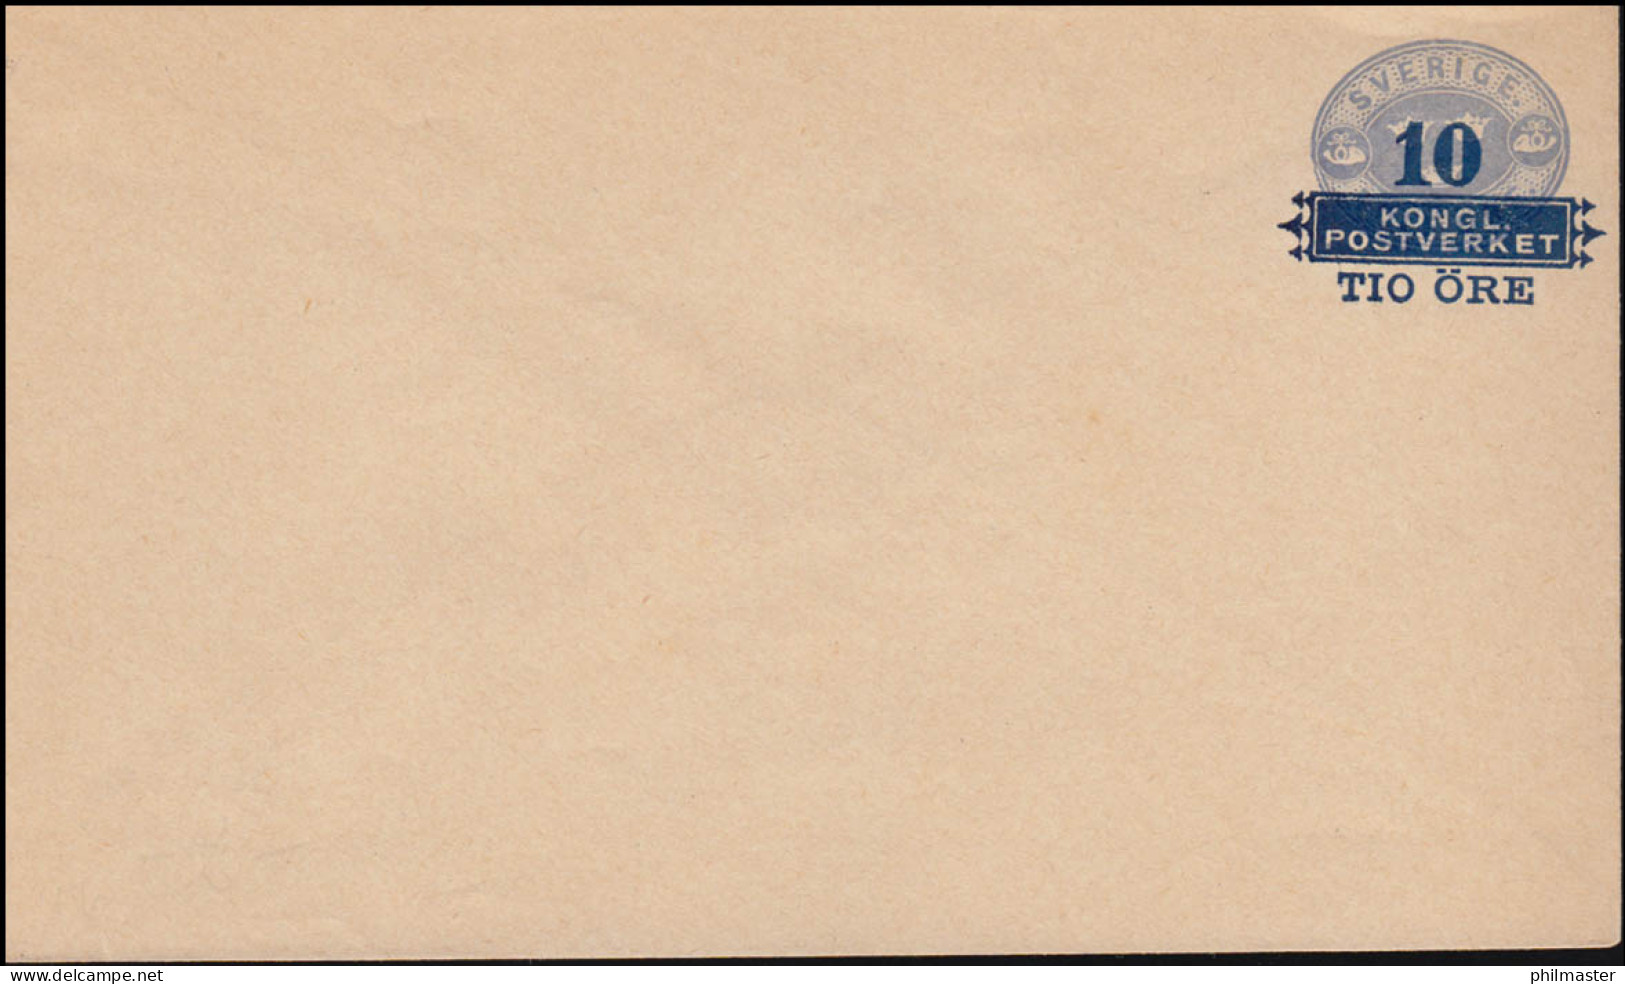 Schweden Umschlag U 6 Drei Kronen Mit Aufdruck 10 Auf 12 Öre 1889, ** Postfrisch - Entiers Postaux